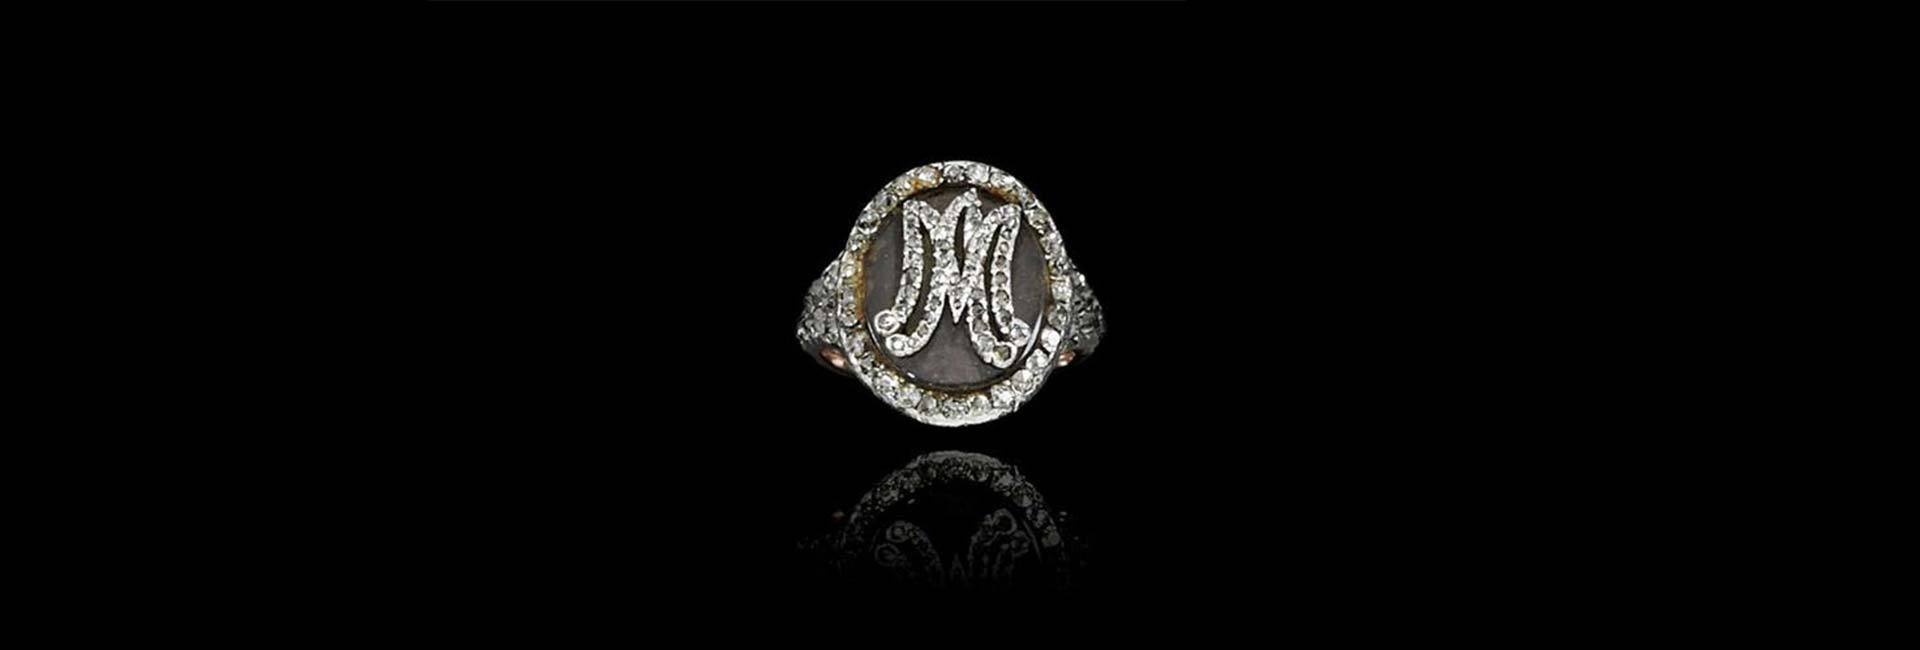 Bague posthume en diamants portant les initiales MA (pour Marie-Antoinette) et renfermant une mèche des cheveux de la reine © DR/Sotheby's